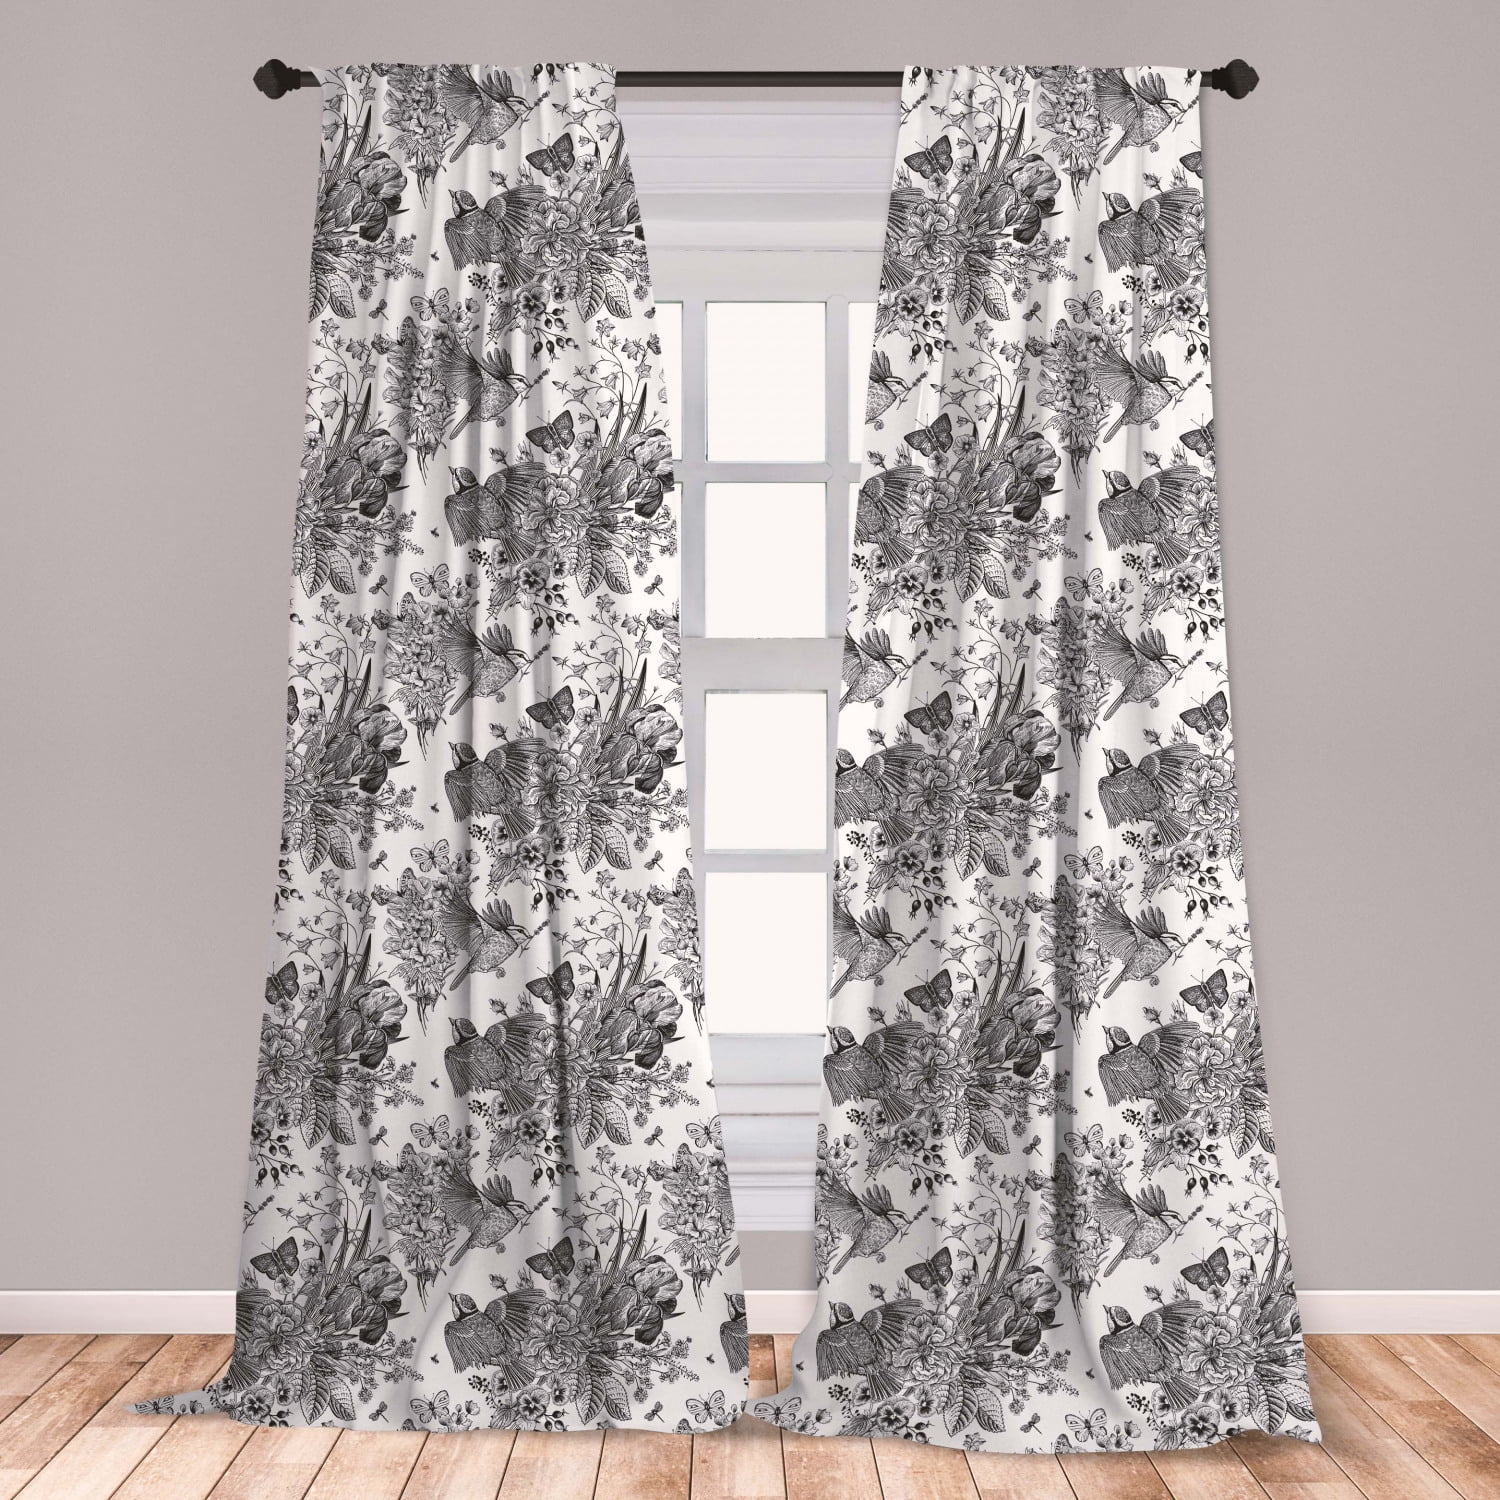 Floral Curtains 2 Panels Set